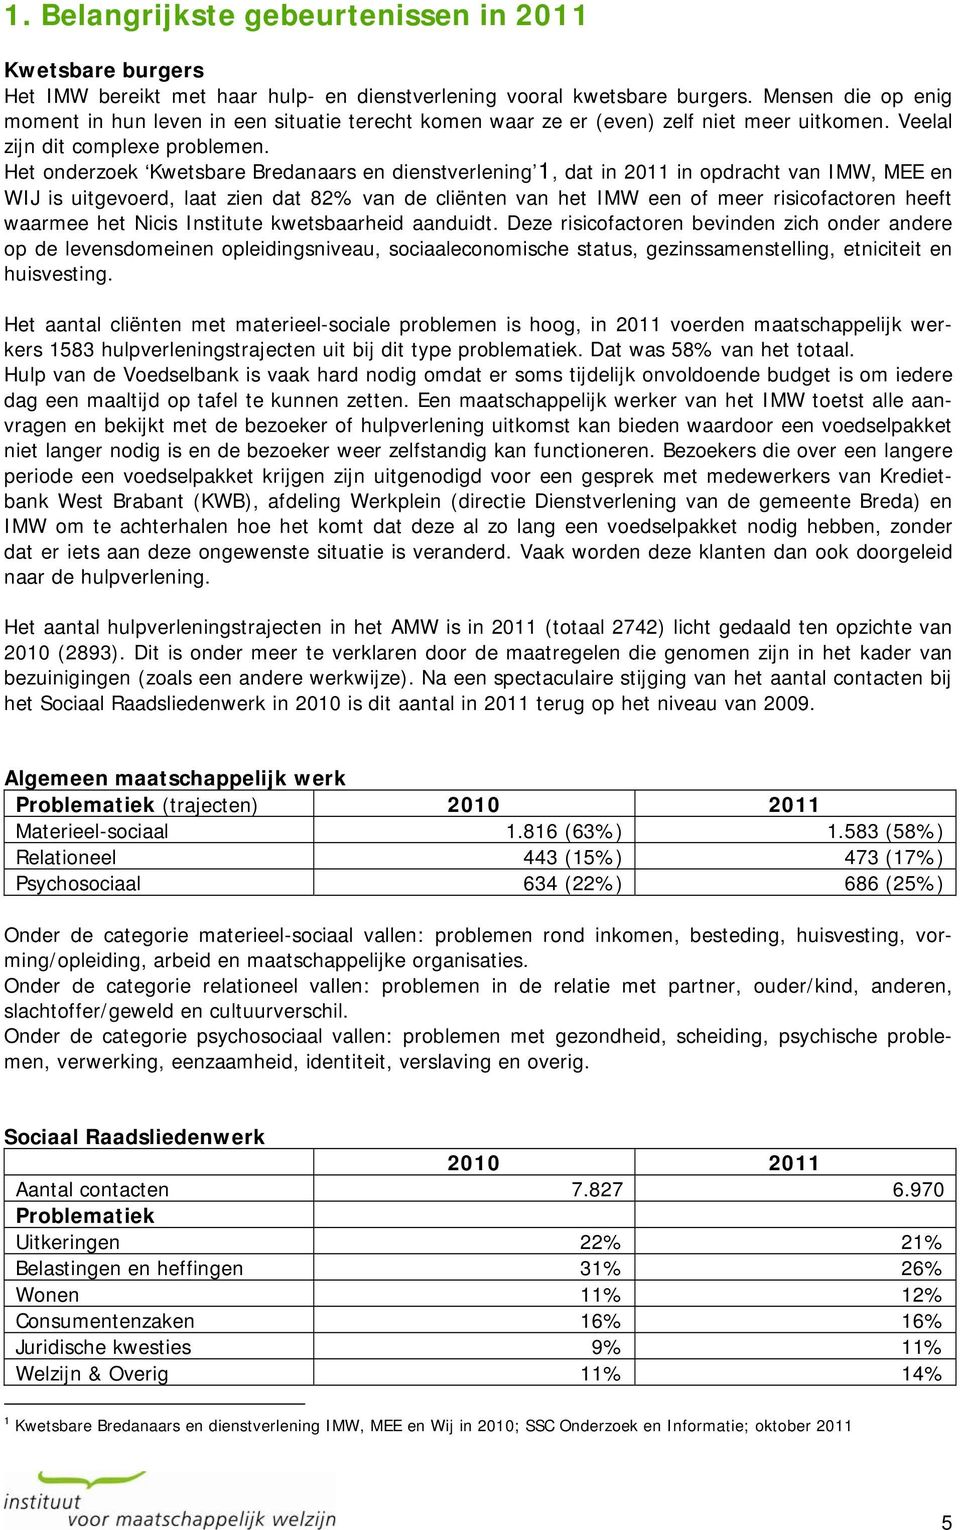 Het onderzoek Kwetsbare Bredanaars en dienstverlening 1, dat in 2011 in opdracht van IMW, MEE en WIJ is uitgevoerd, laat zien dat 82% van de cliënten van het IMW een of meer risicofactoren heeft